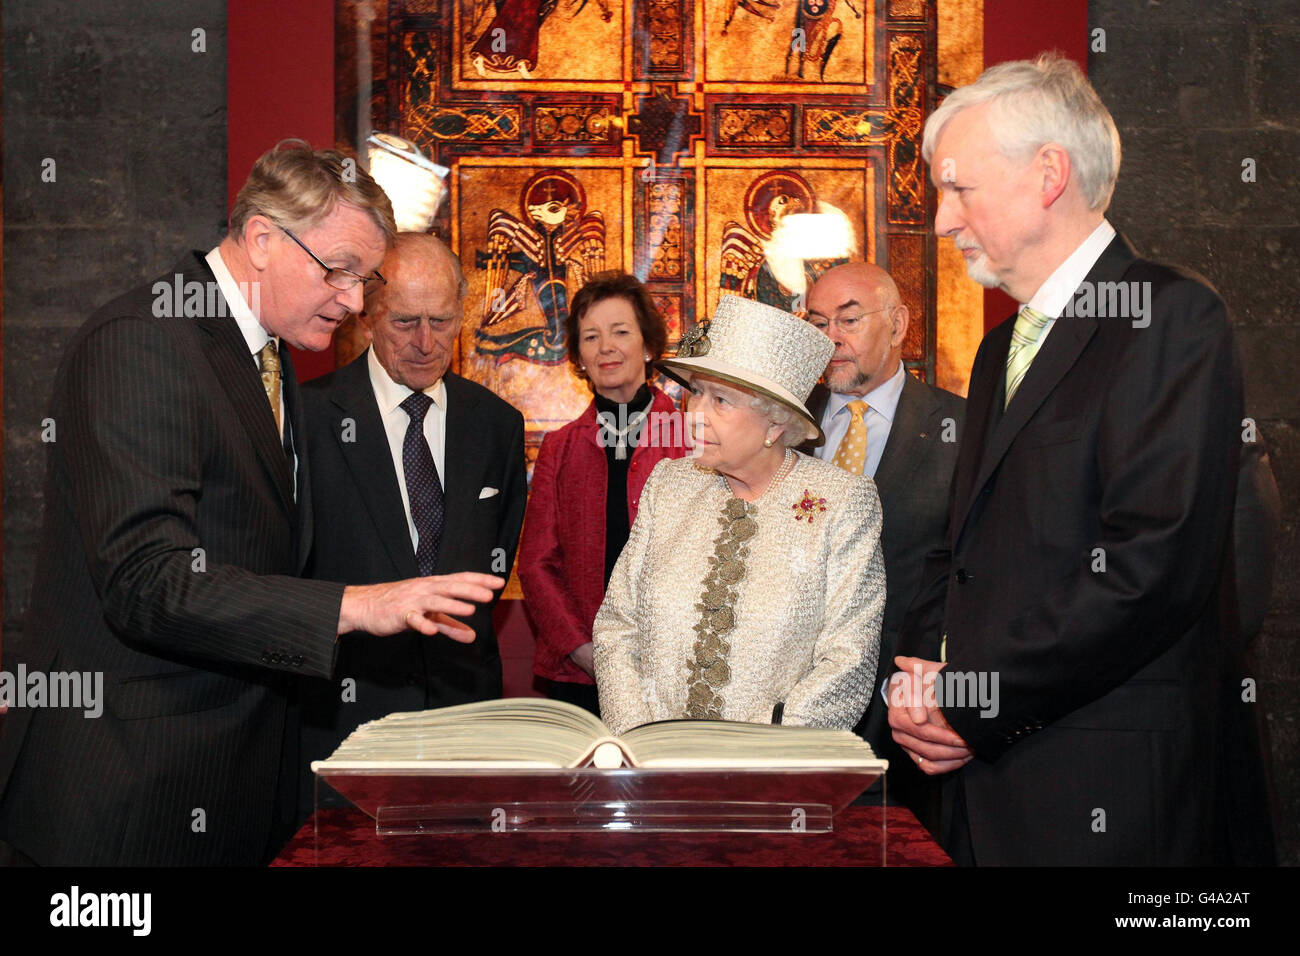 Königin Elizabeth II. Und der Herzog von Edinburgh betrachten ein Faksimile des Buches Kells mit dem Provost des Trinity College Dublin Dr. John Hegarty, Bibliothekar Robin Adams und Kanzlerin der Universität Dr. Mary Robinson während des ersten Tages ihres Staatsbesuchs in Irland. Stockfoto